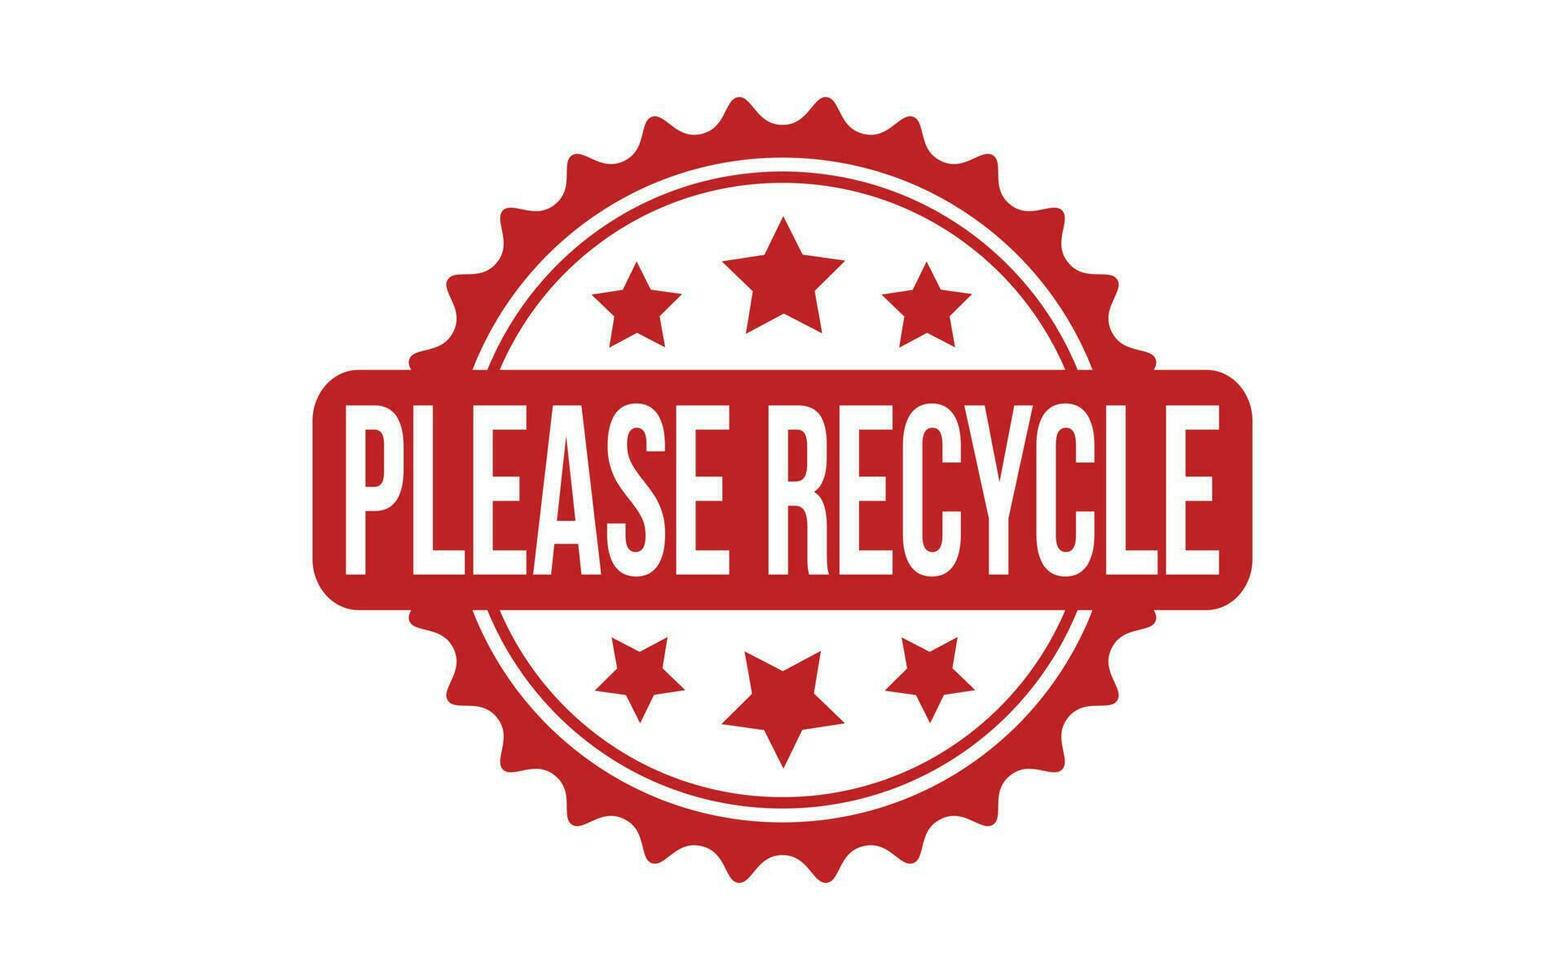 alstublieft recycle rubber postzegel zegel vector